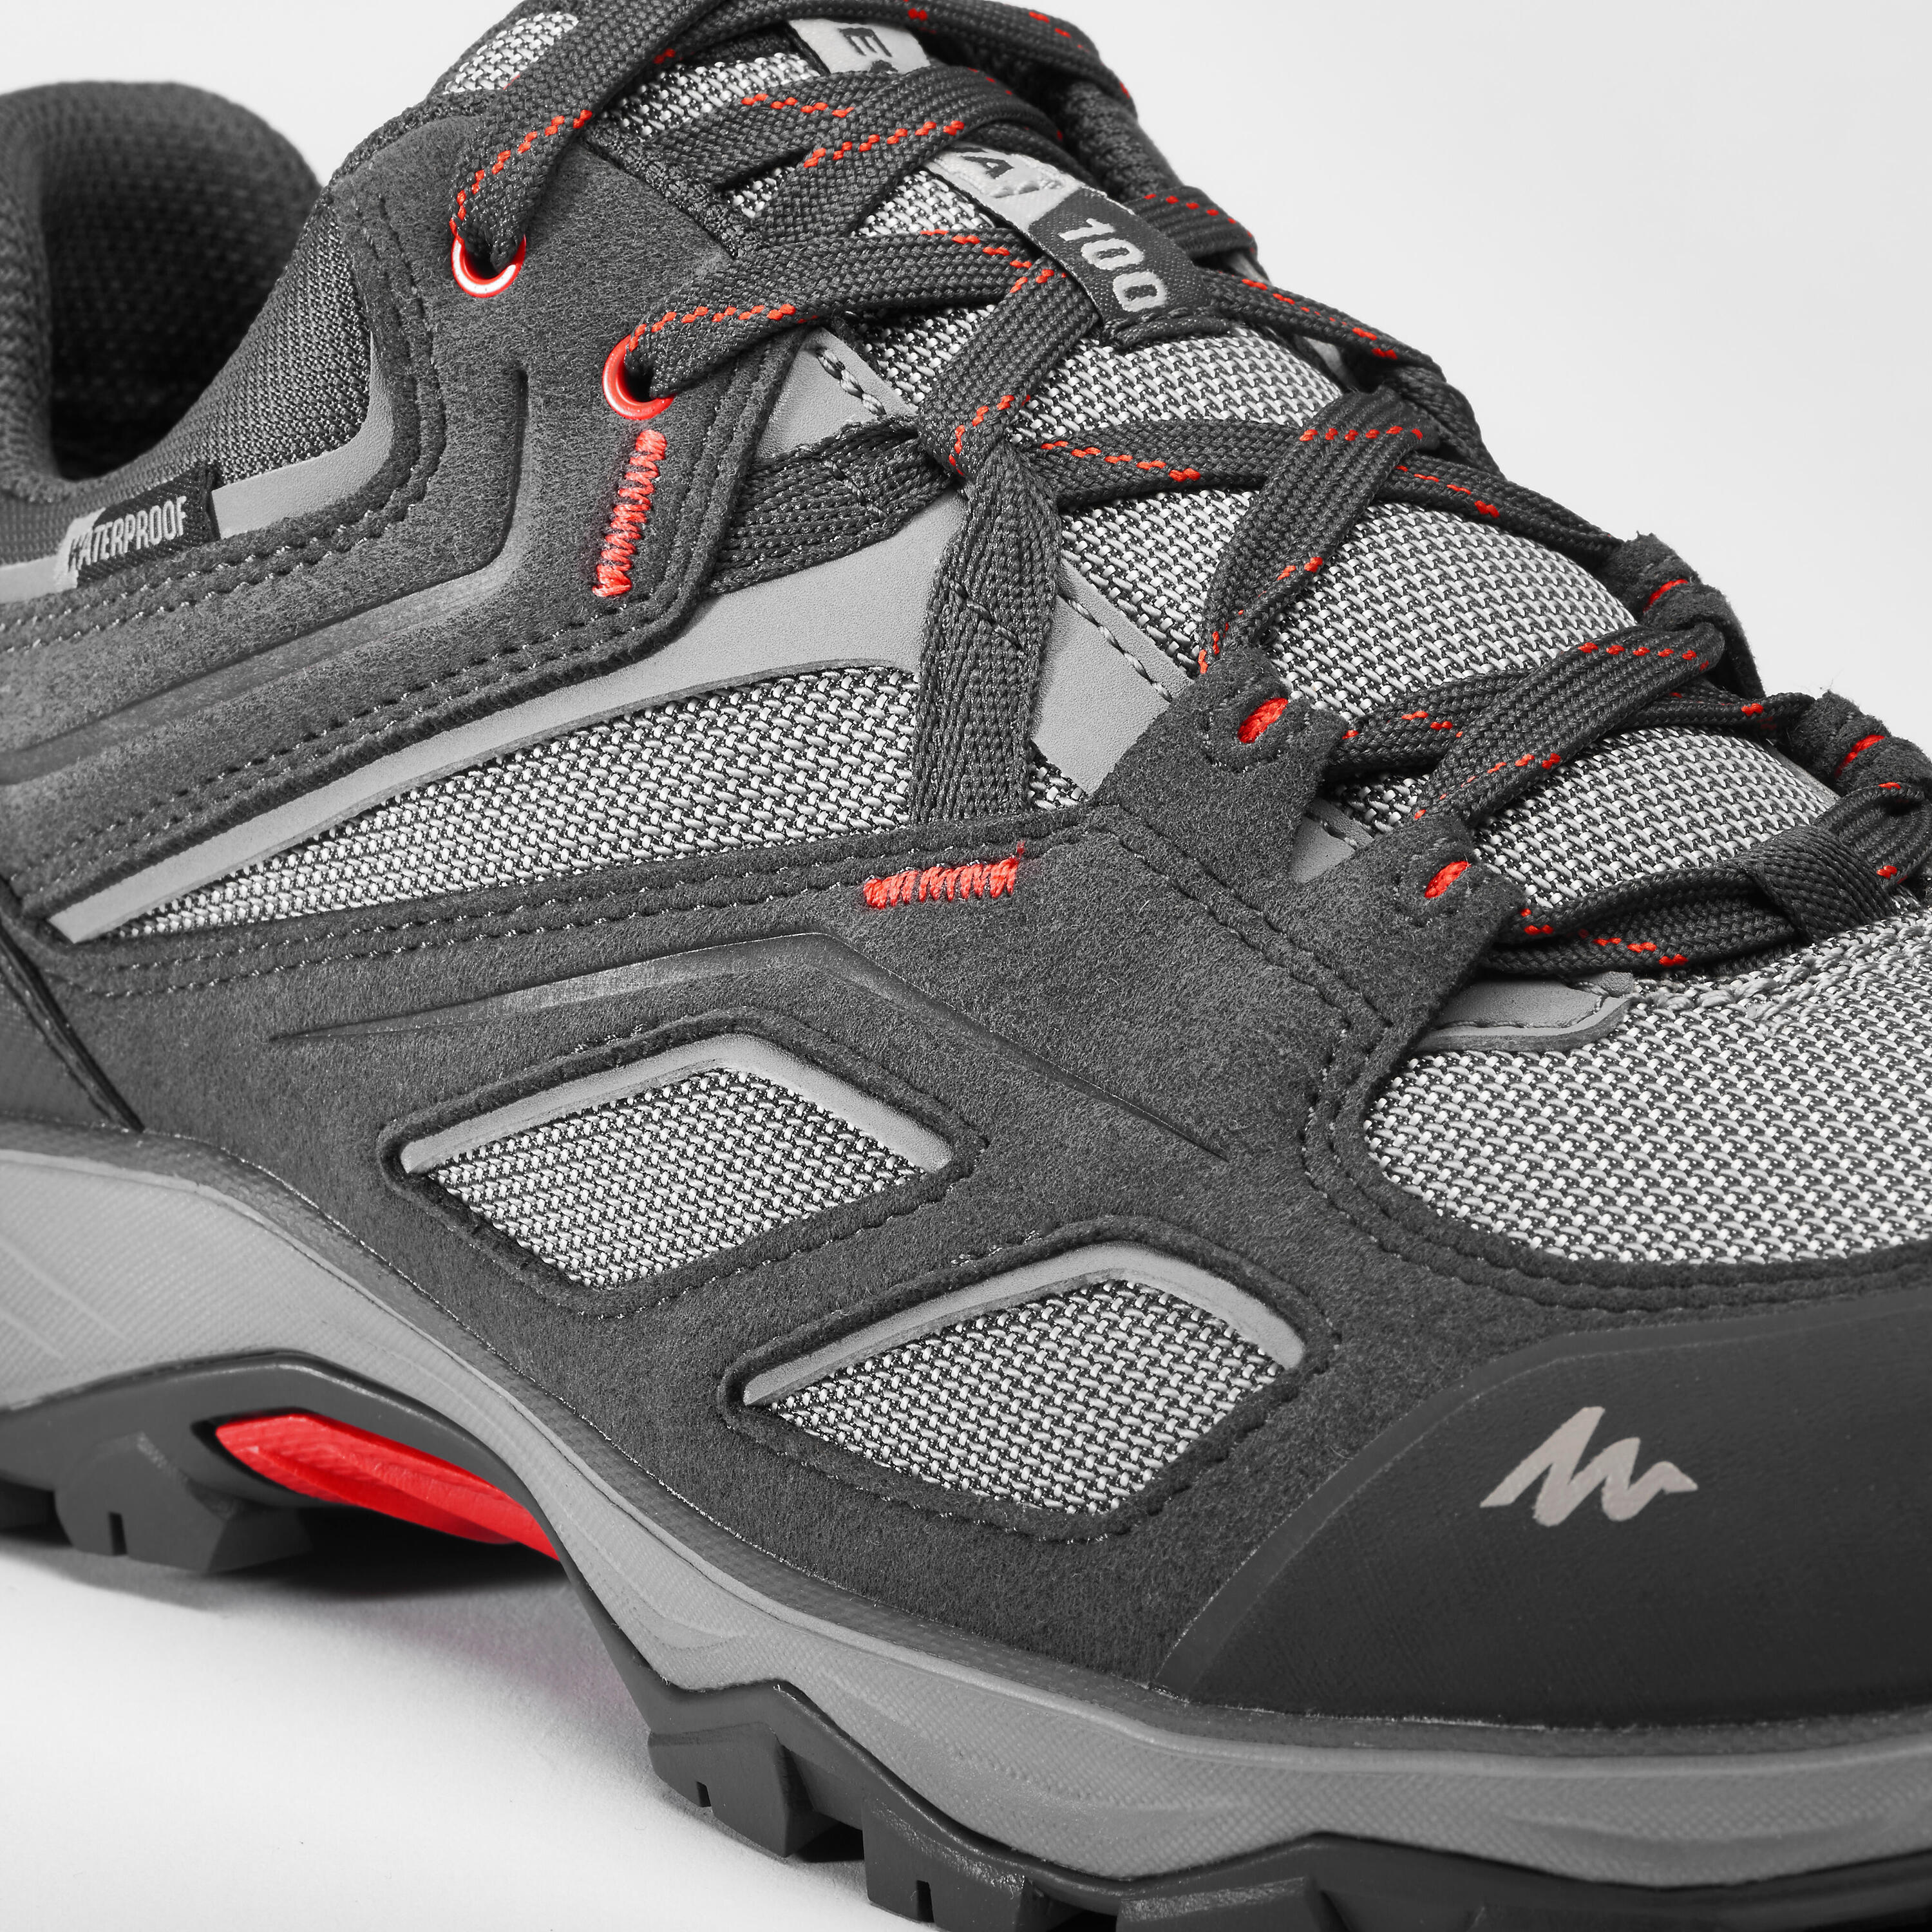 Men's waterproof mountain hiking shoes - MH100 - Grey 8/8